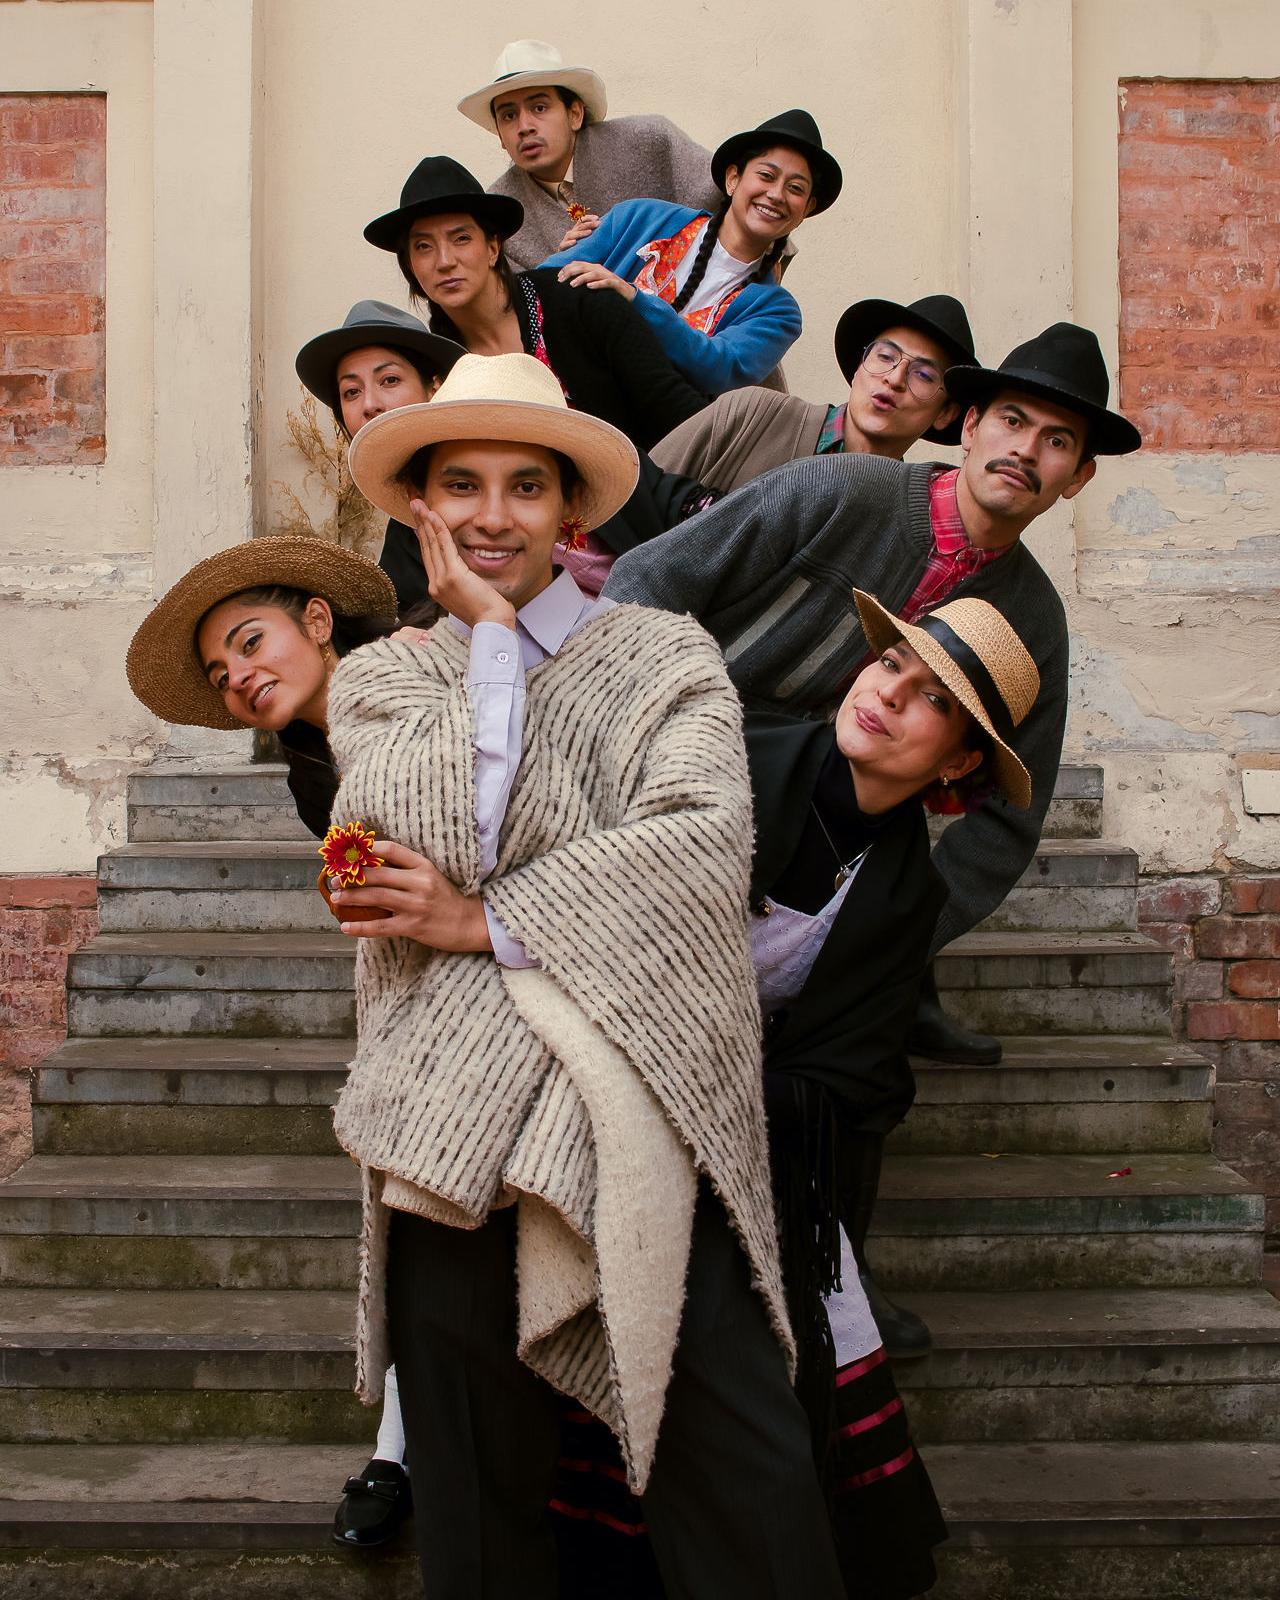 foto con nueve personas vestidas de atuendos campesinos